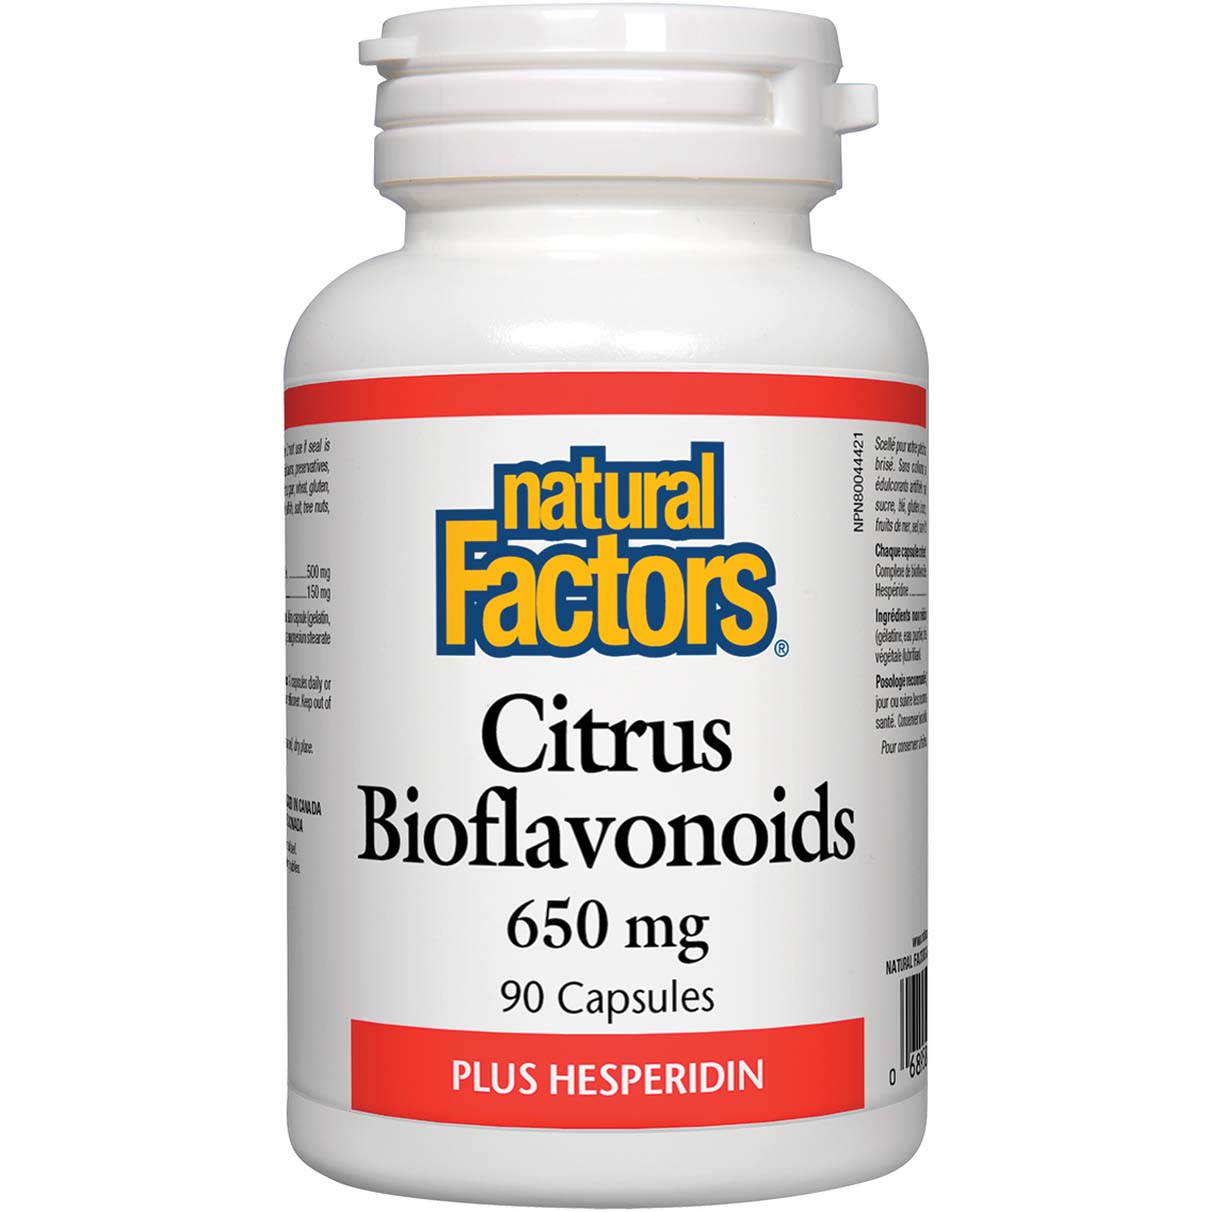 Natural Factors Citrus Bioflavonoids 650 Mg 90 Capsules 90 Capsules 650 mg